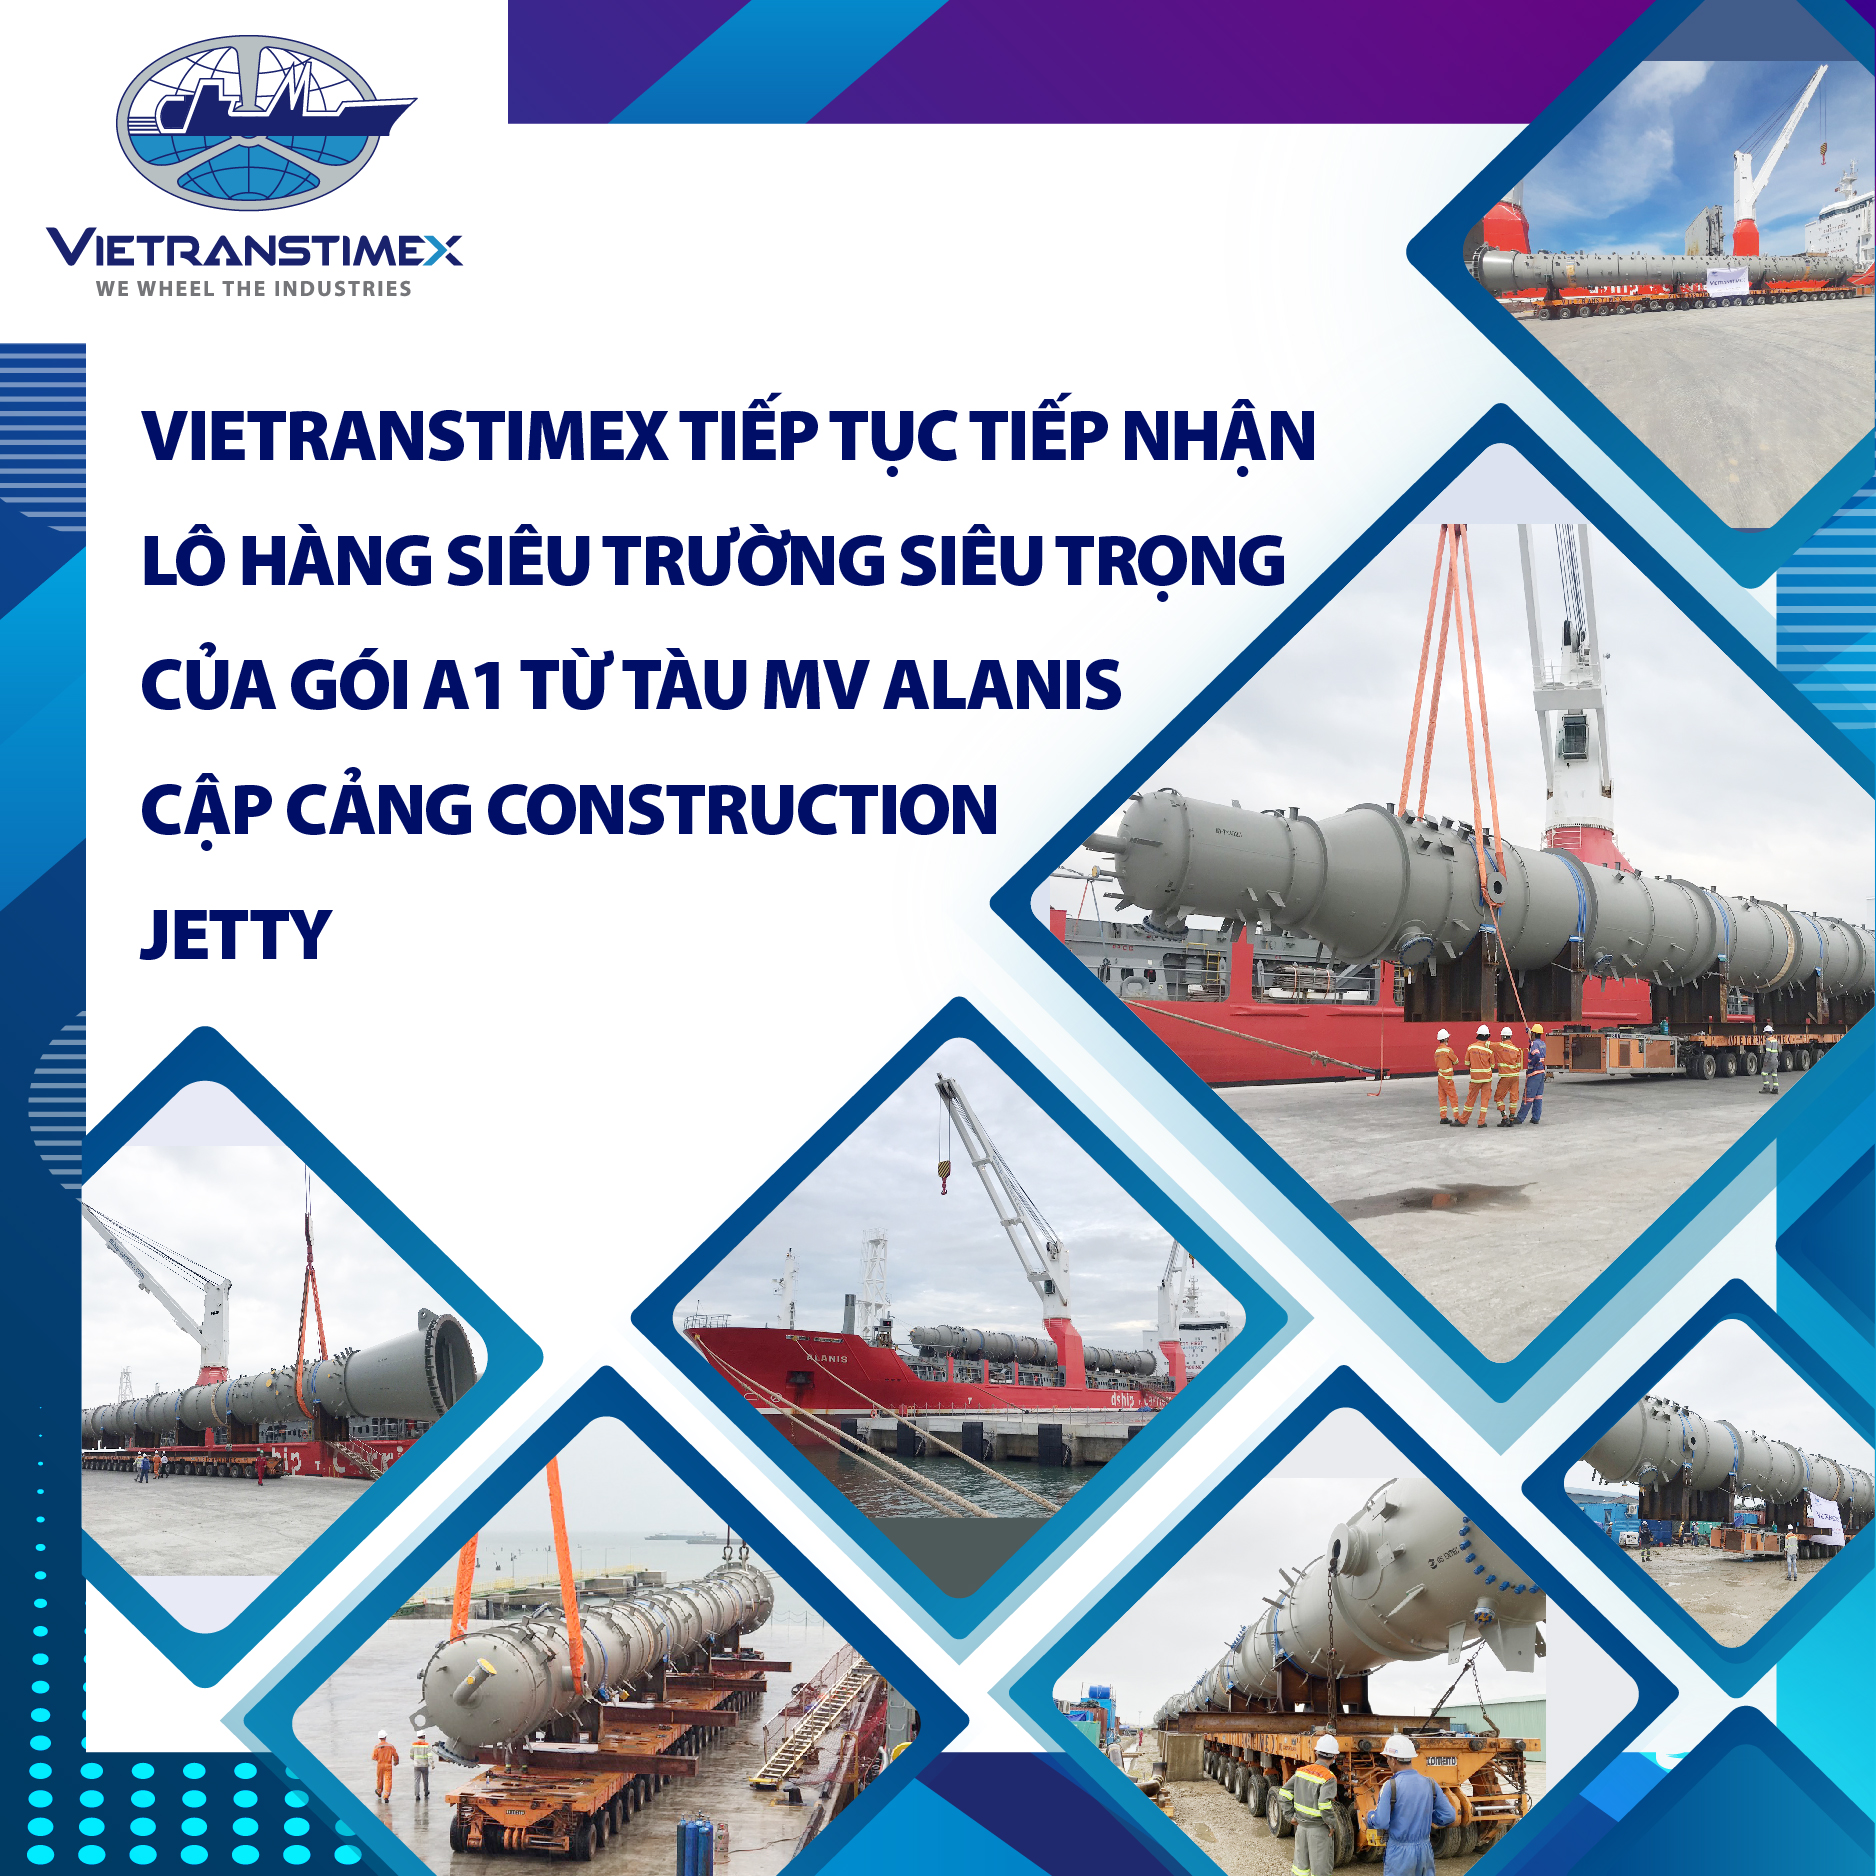 Vietranstimex Tiếp Tục Tiếp Nhận Lô Hàng Siêu Trường Siêu Trọng Của Gói A1 Từ Tàu MV Alanis Cập Cảng Construction Jetty